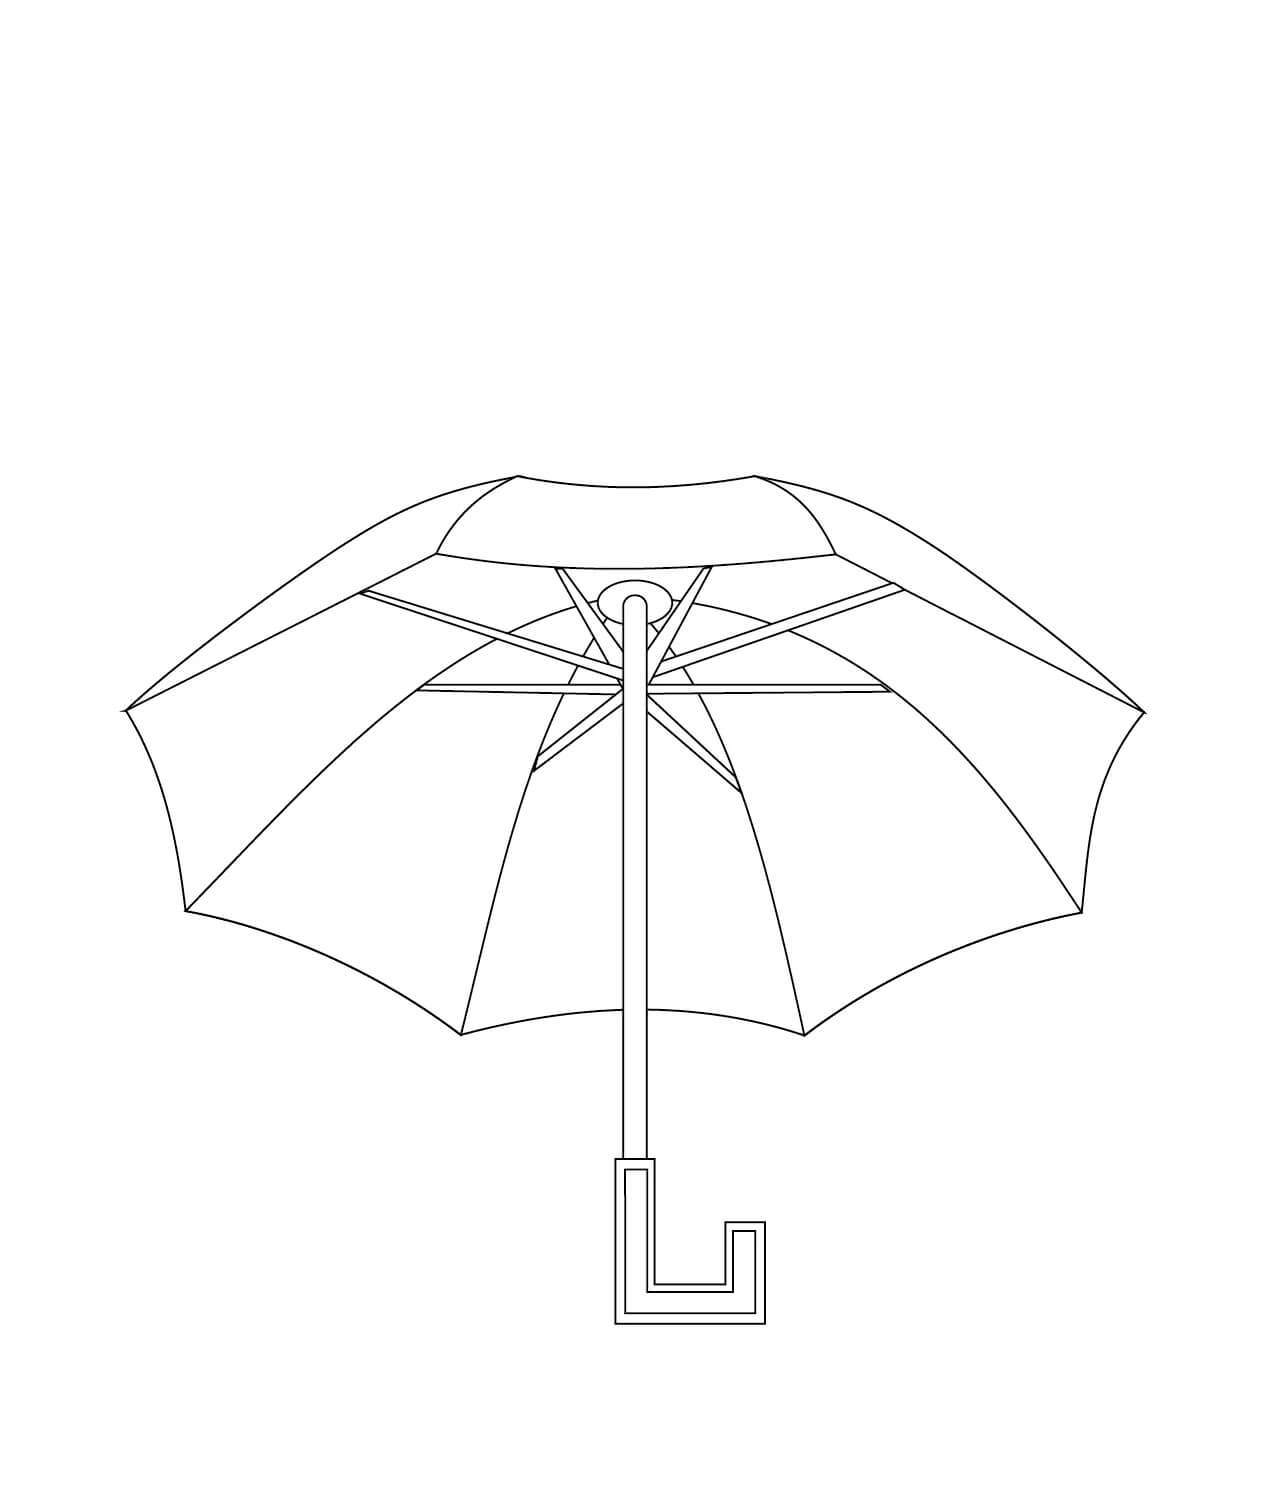 المظلة تلوين